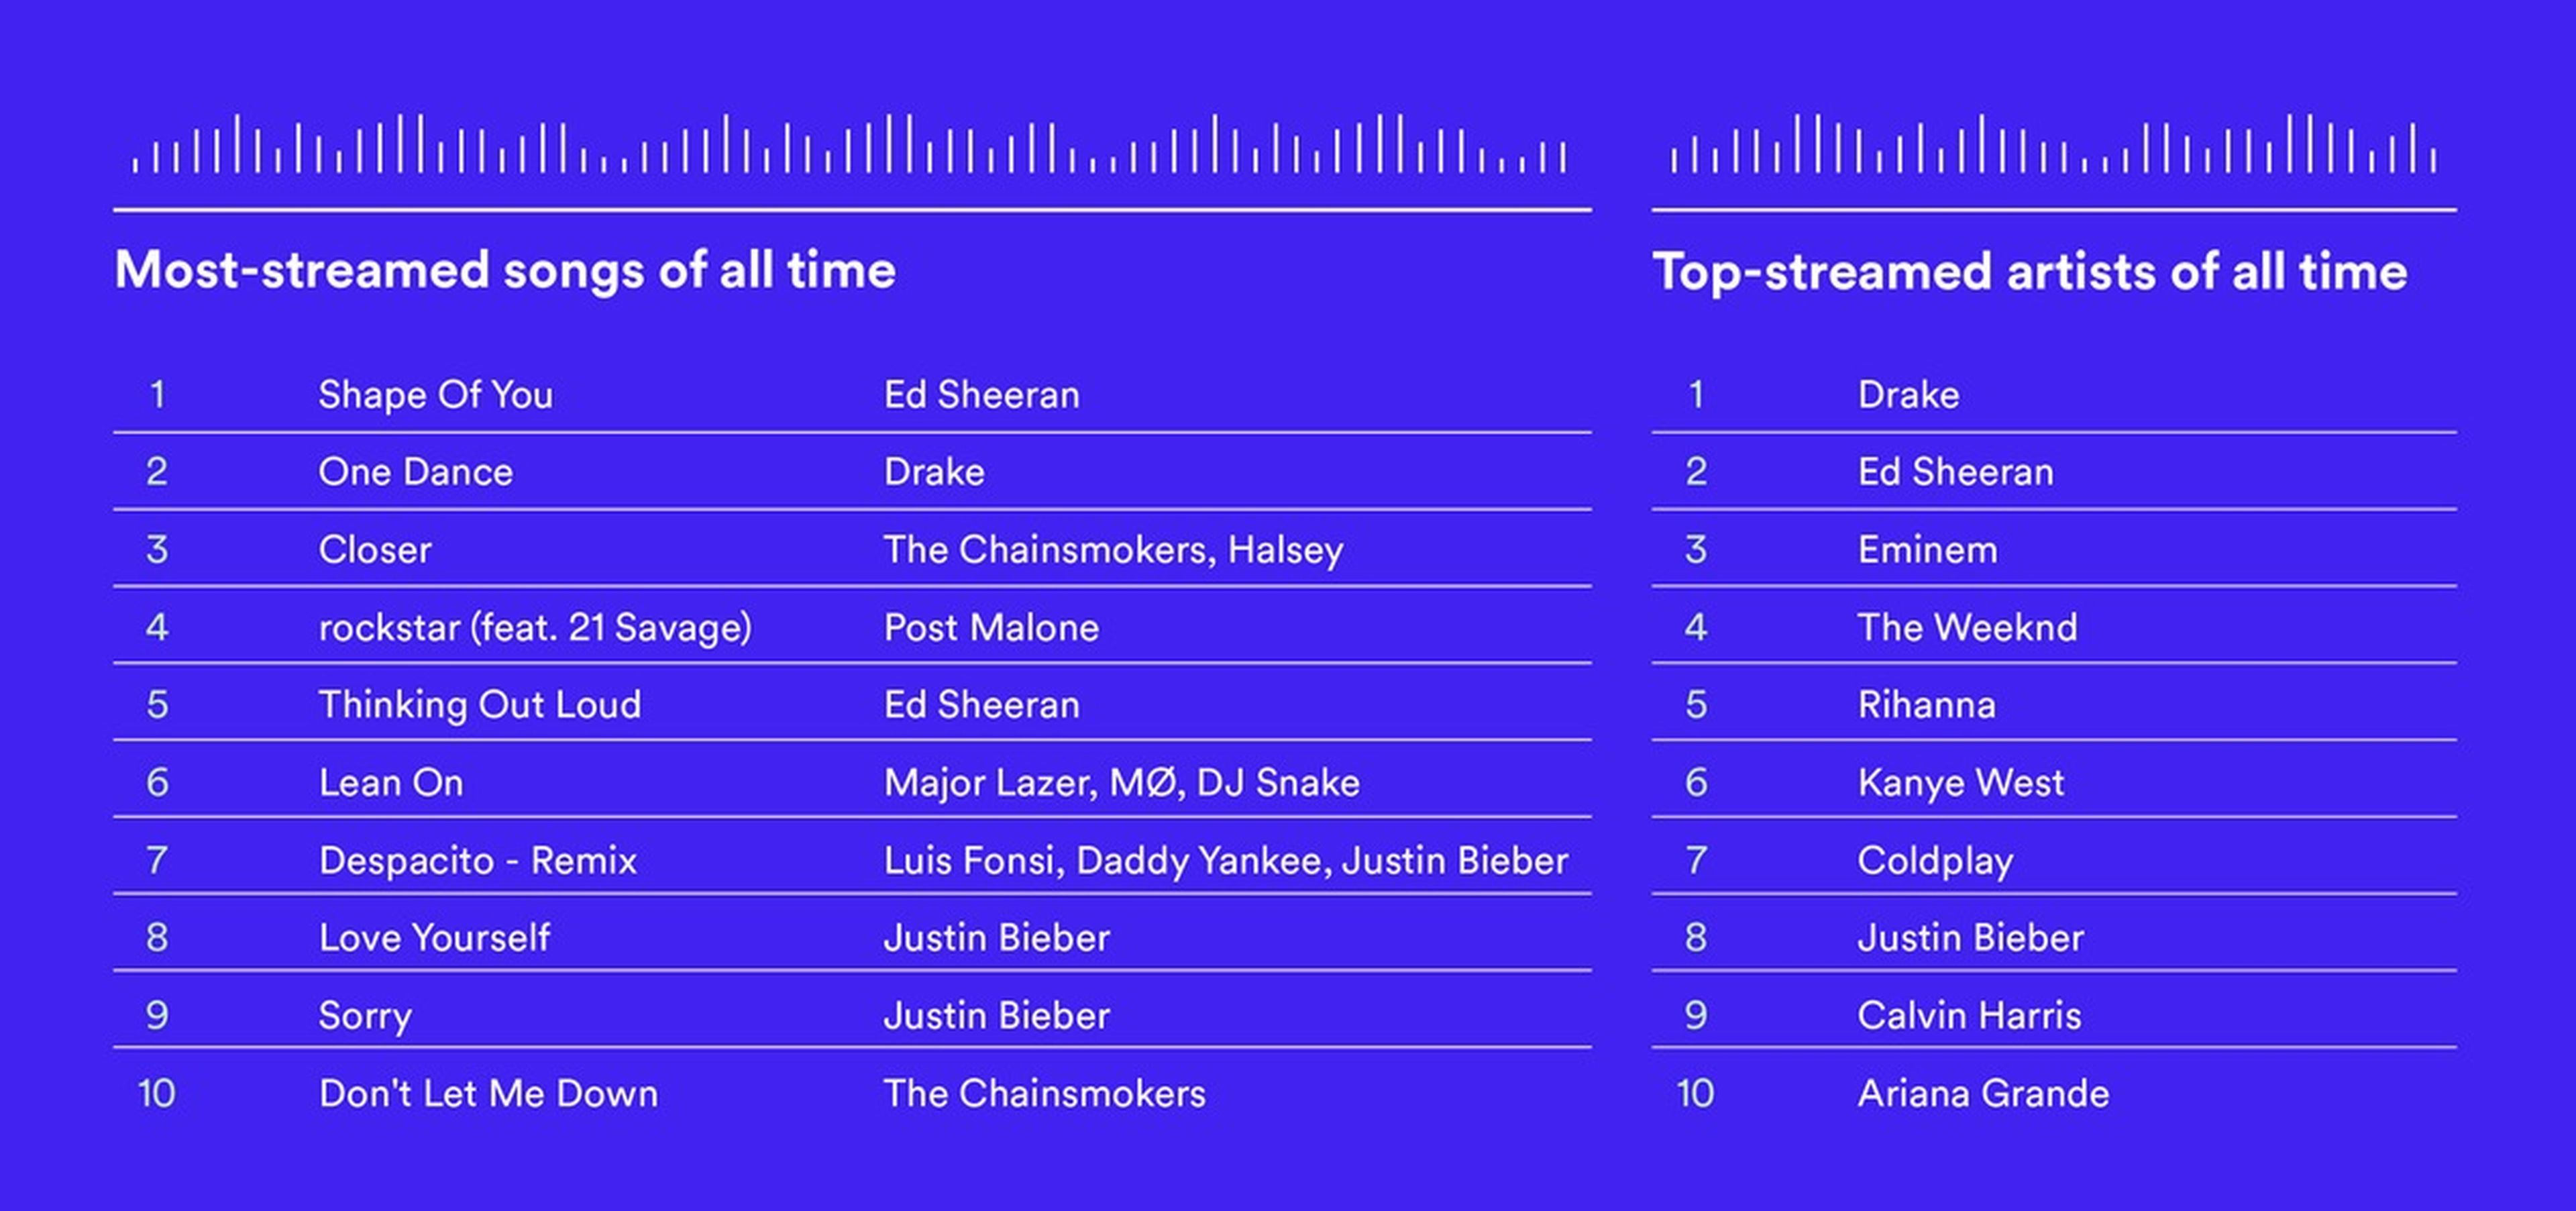 Comunista influenza circulación Estas son las 10 canciones más escuchadas en la historia de Spotify |  Computer Hoy